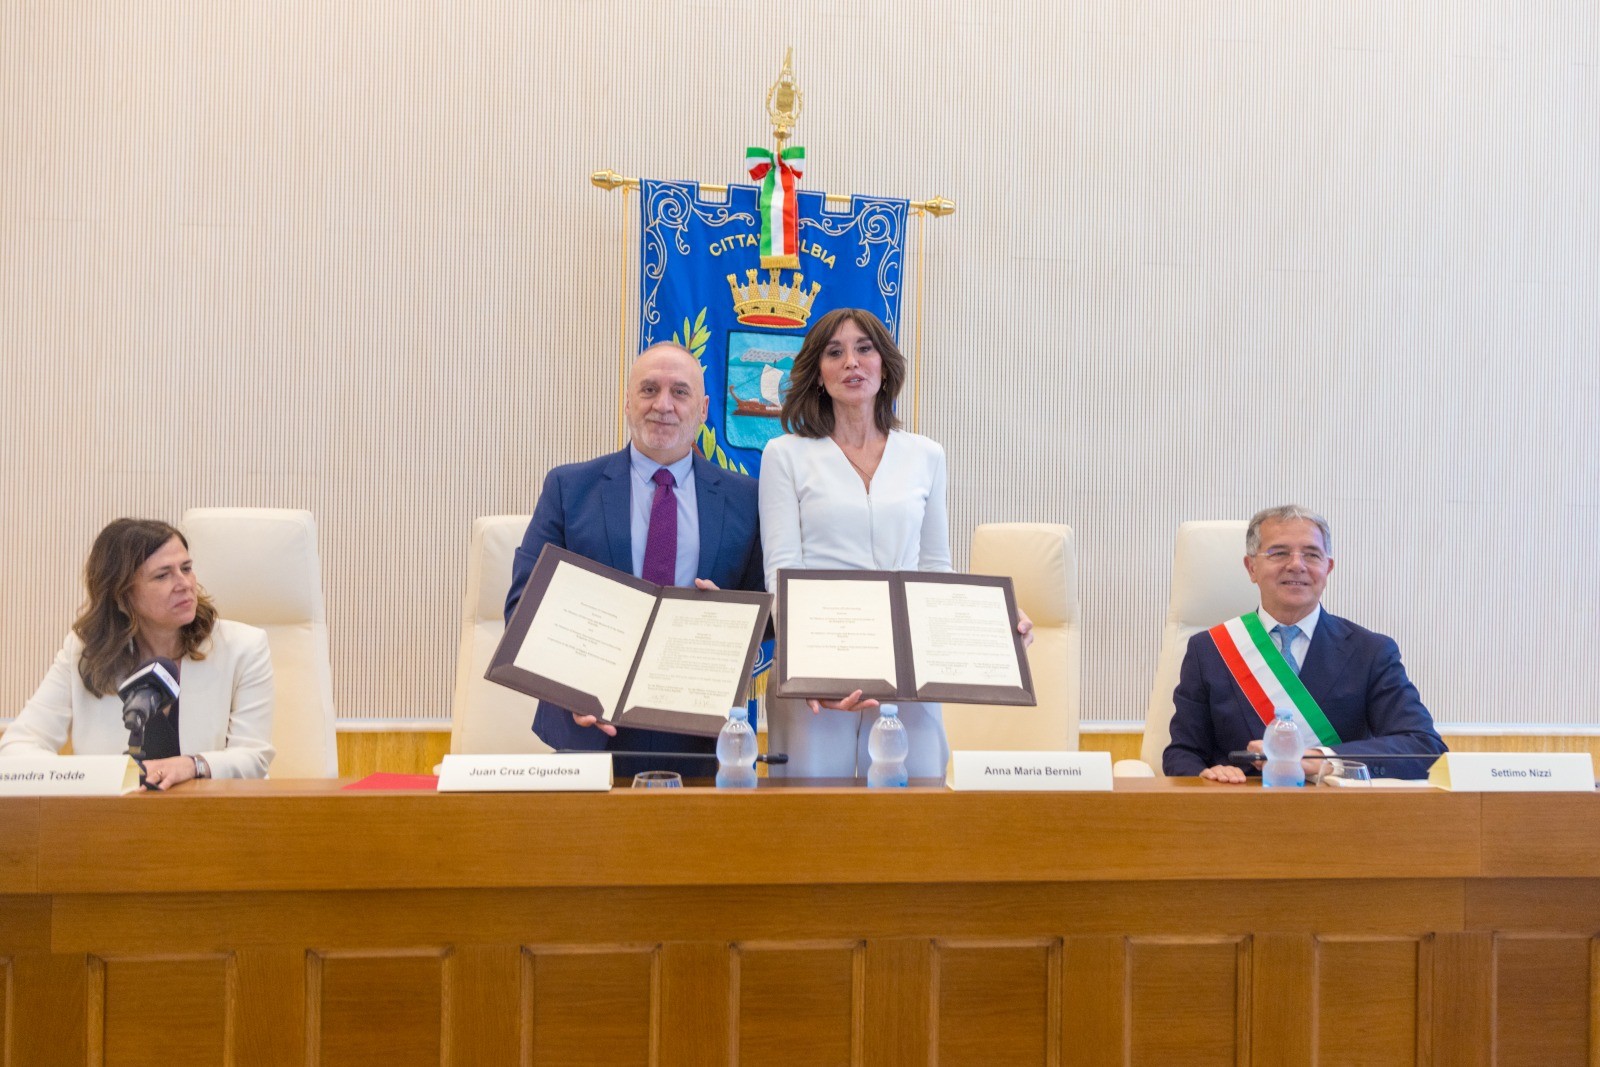 Einstein Telescope, siglato ad Olbia l’accordo con la Spagna per il sostegno alla candidatura dell’Italia.  Bernini: proposta italiana ancora più forte e credibile.